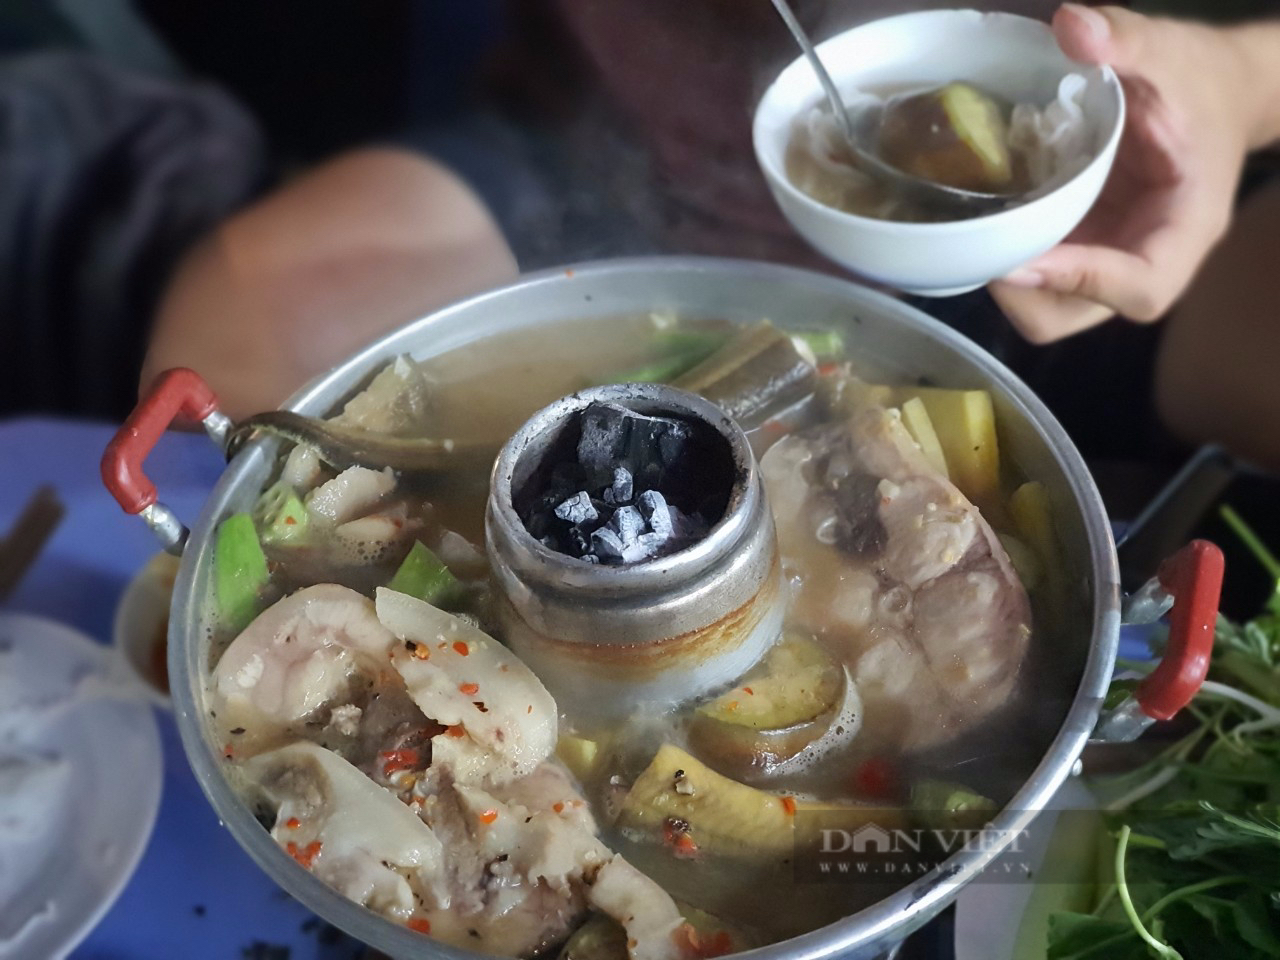 Sài Gòn quán: Lẩu mắm miền Tây đầy ắp cá, lươn, vị đậm đà, khách ngồi chờ cả tiếng mới được ăn - Ảnh 3.